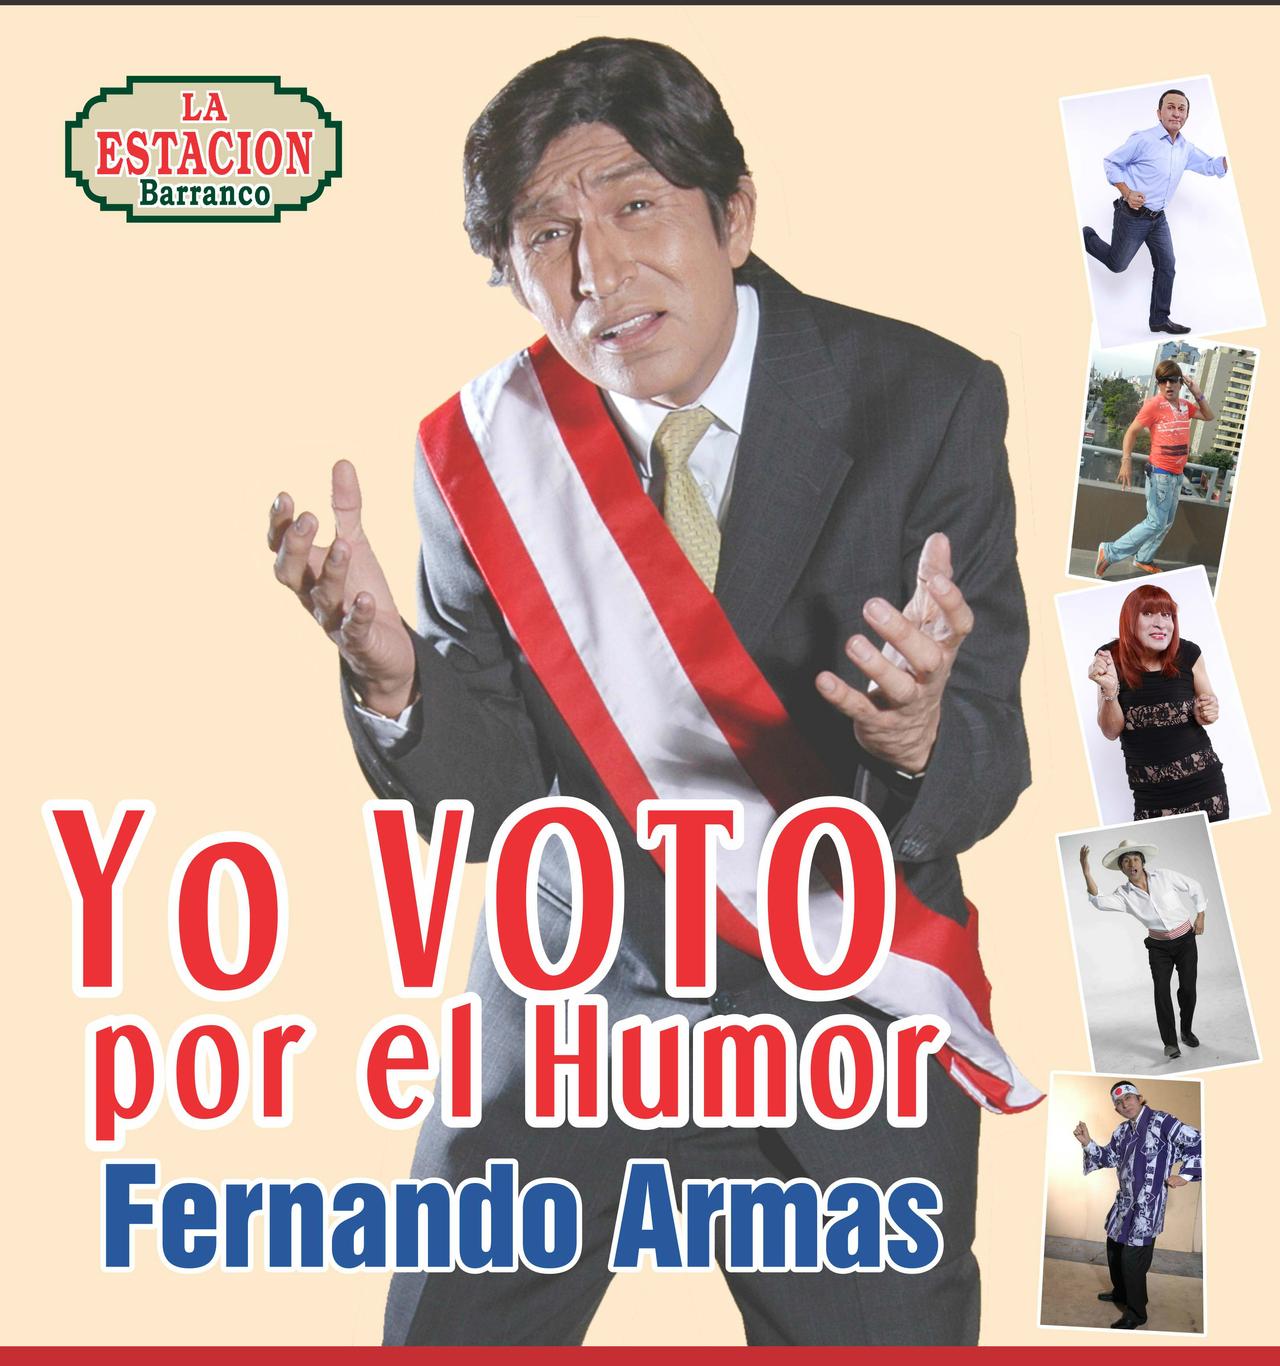 Yo voto por el humor - Fernando Armas 